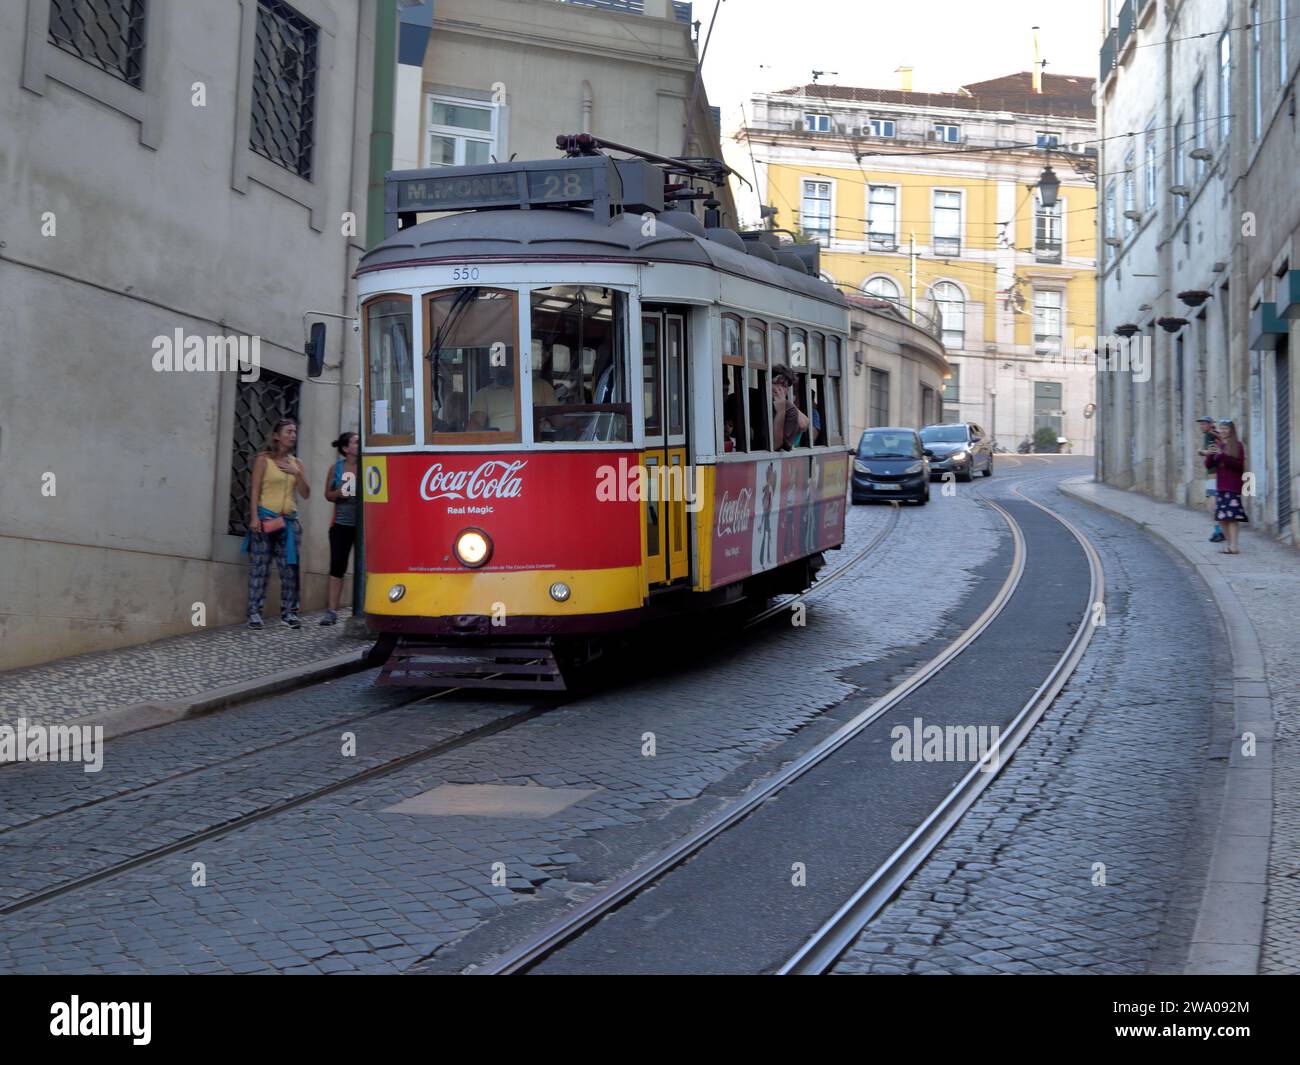 Rouge rétro Tram 28 entreprise de publicité Coca-Cola dans les rues de Lisbonne Banque D'Images